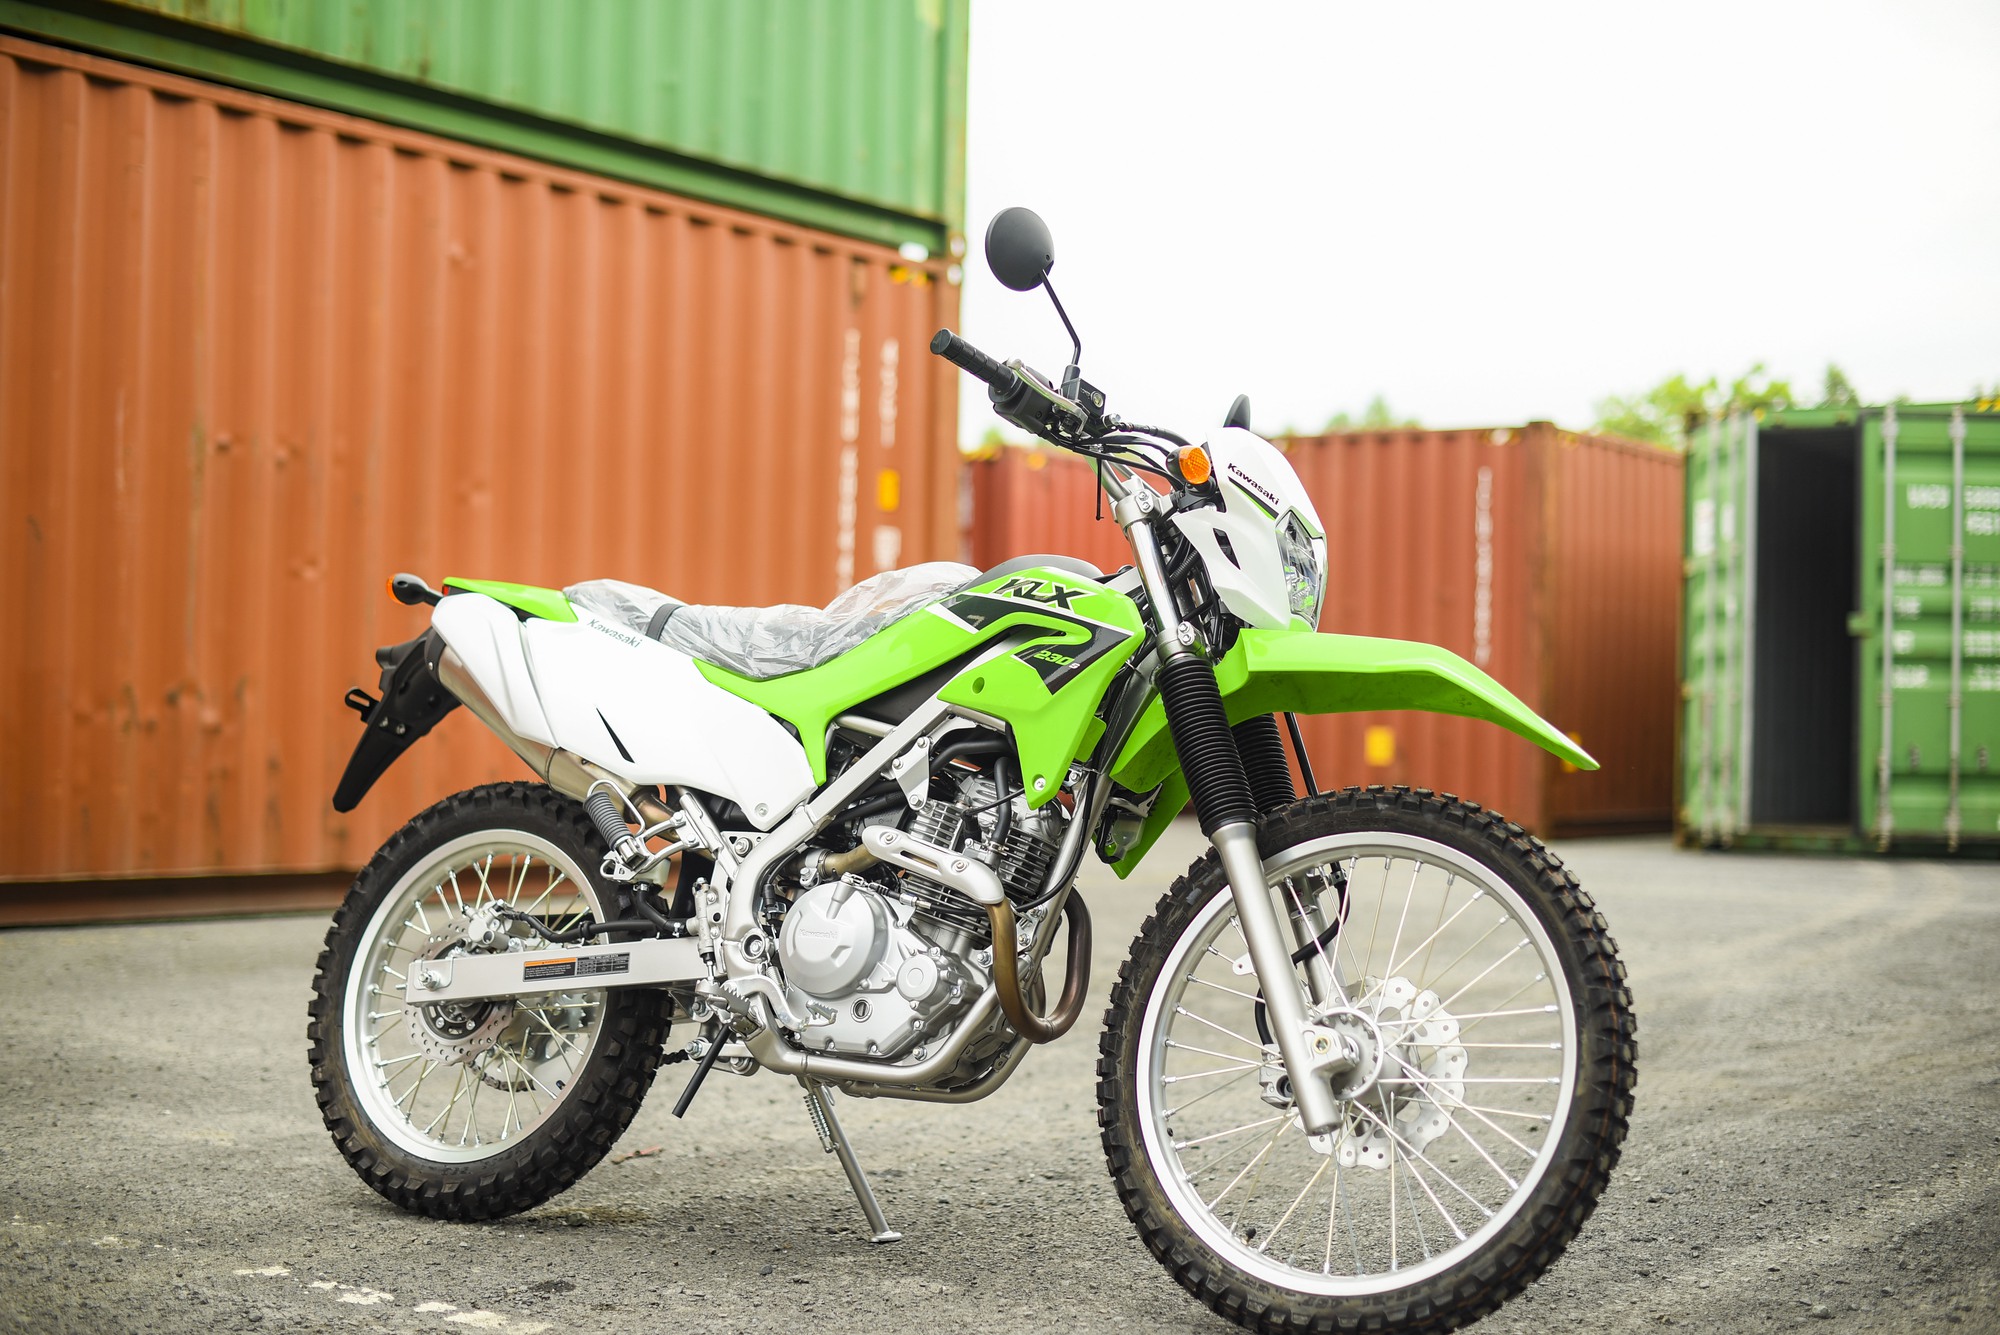 Ra mắt Kawasaki KLX230 tại Việt Nam, giá 151 triệu đồng - Ảnh 3.